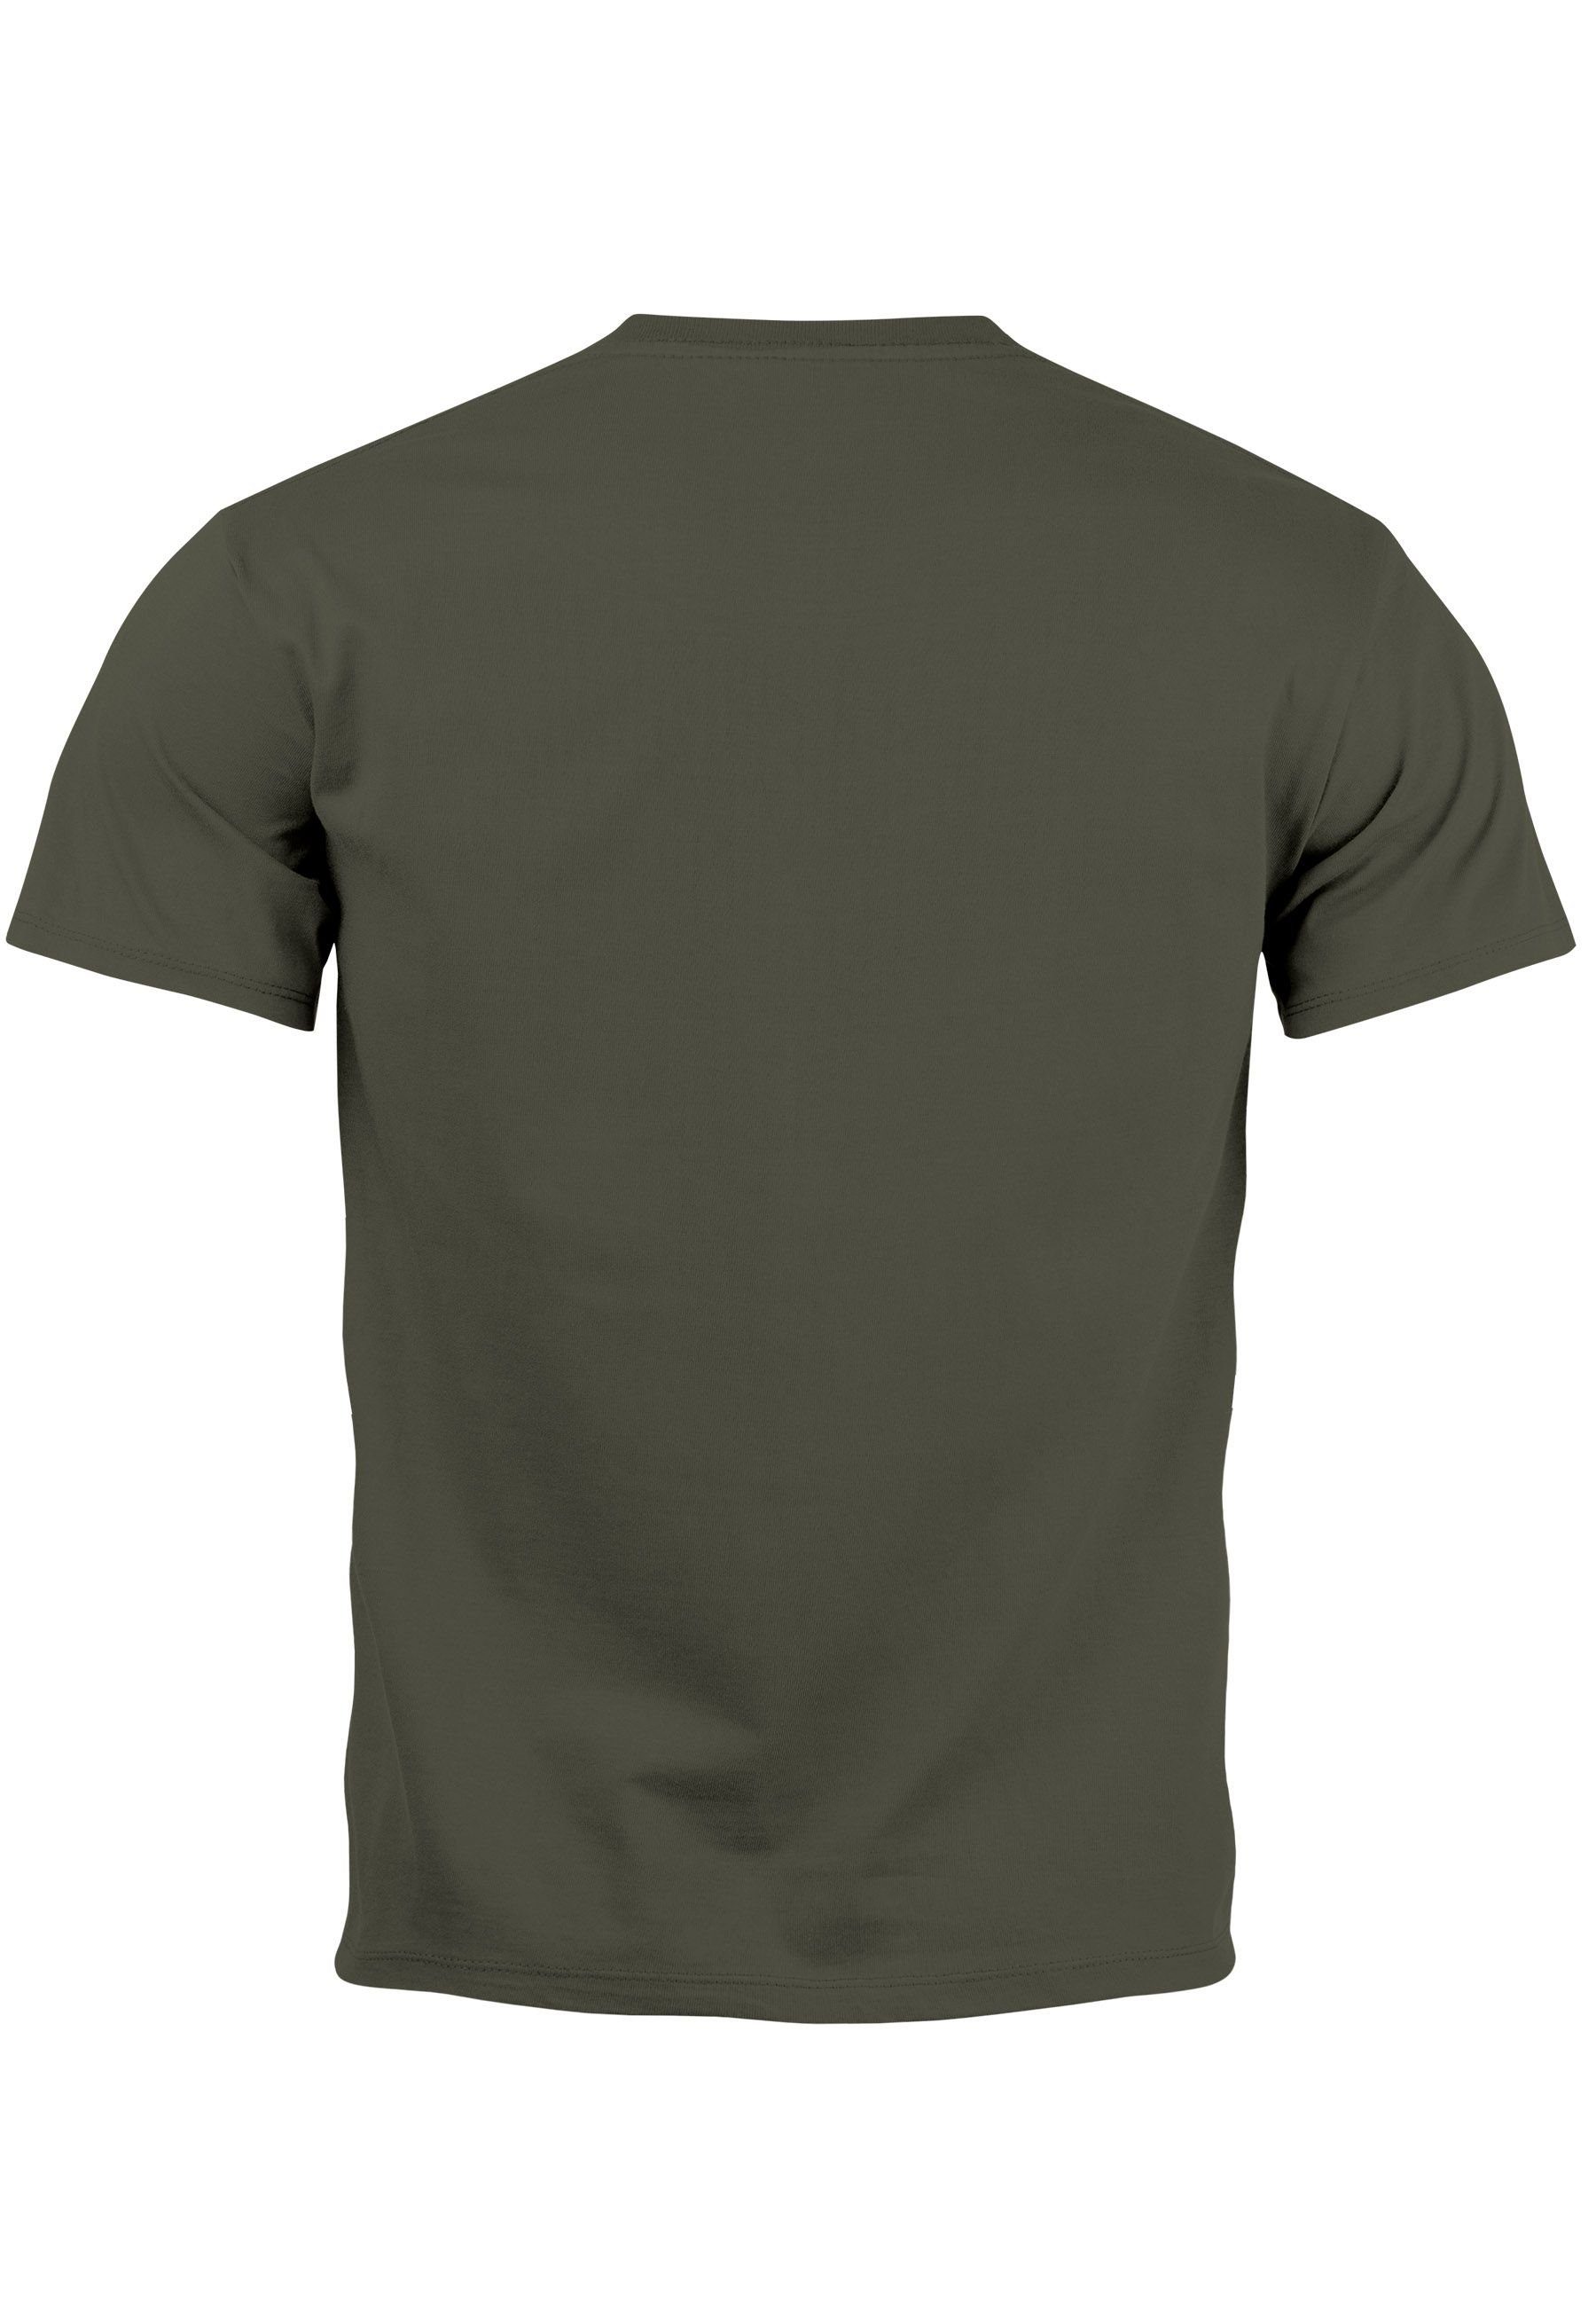 Herren Neverless Outdoor Printshirt Print Aufdruck Grafik army mit Print-Shirt Bär Polygon T-Shirt N Motive